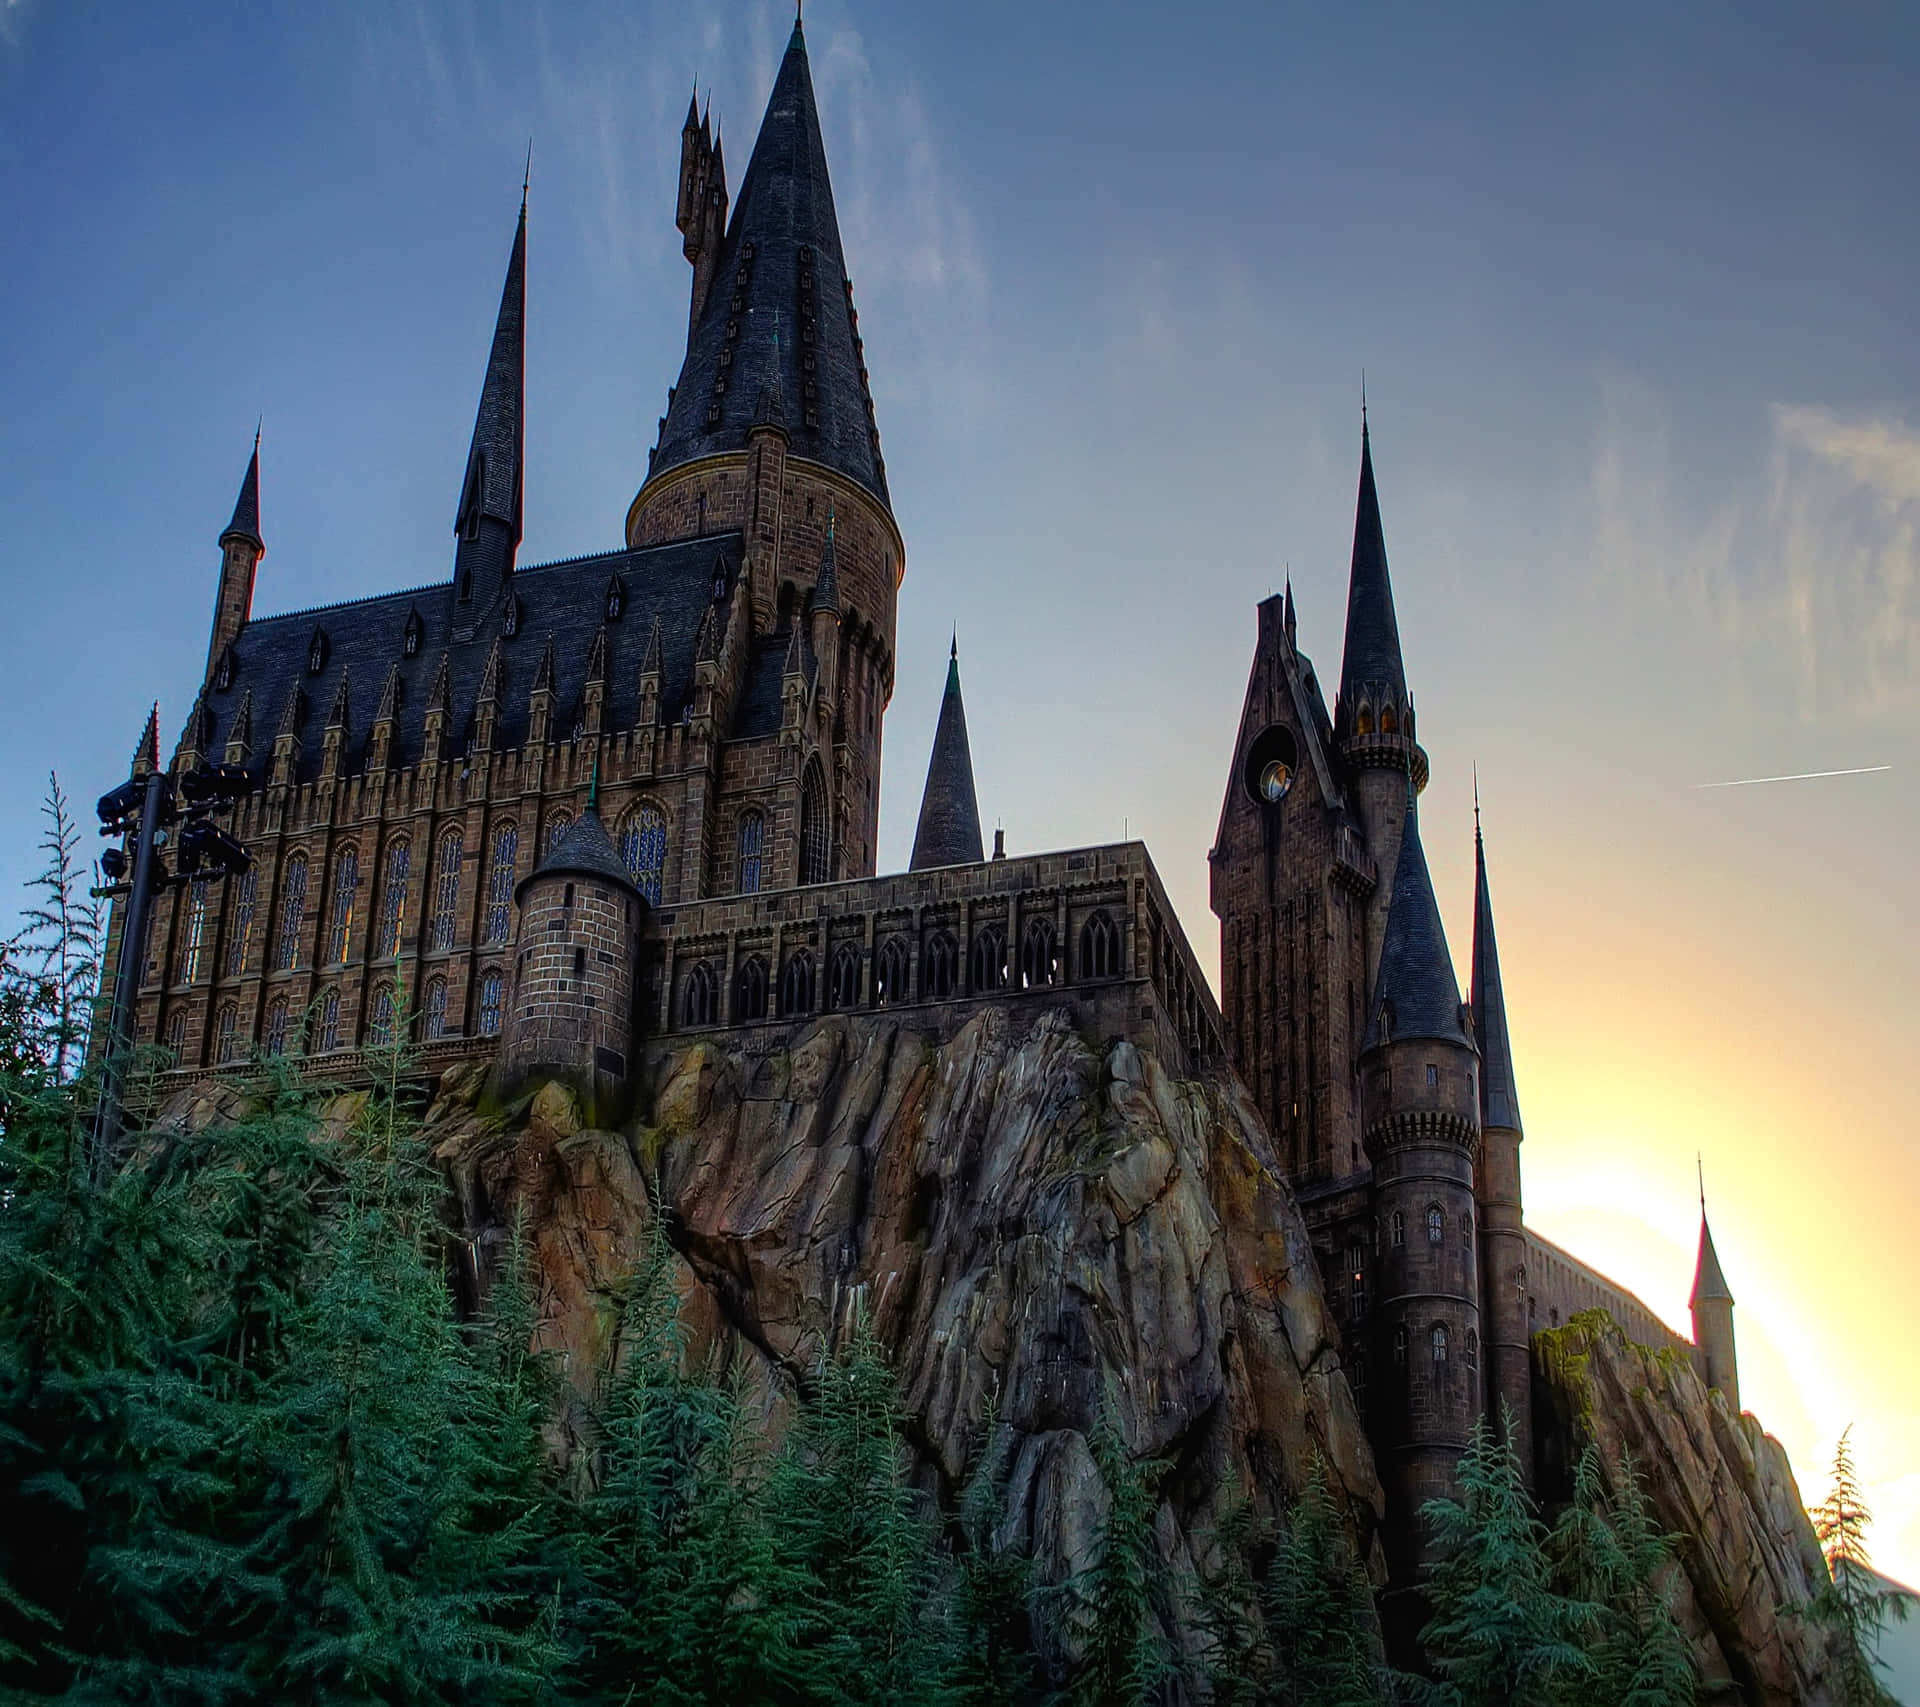 Caption: Majestic Hogwarts Castle Illuminated At Dusk